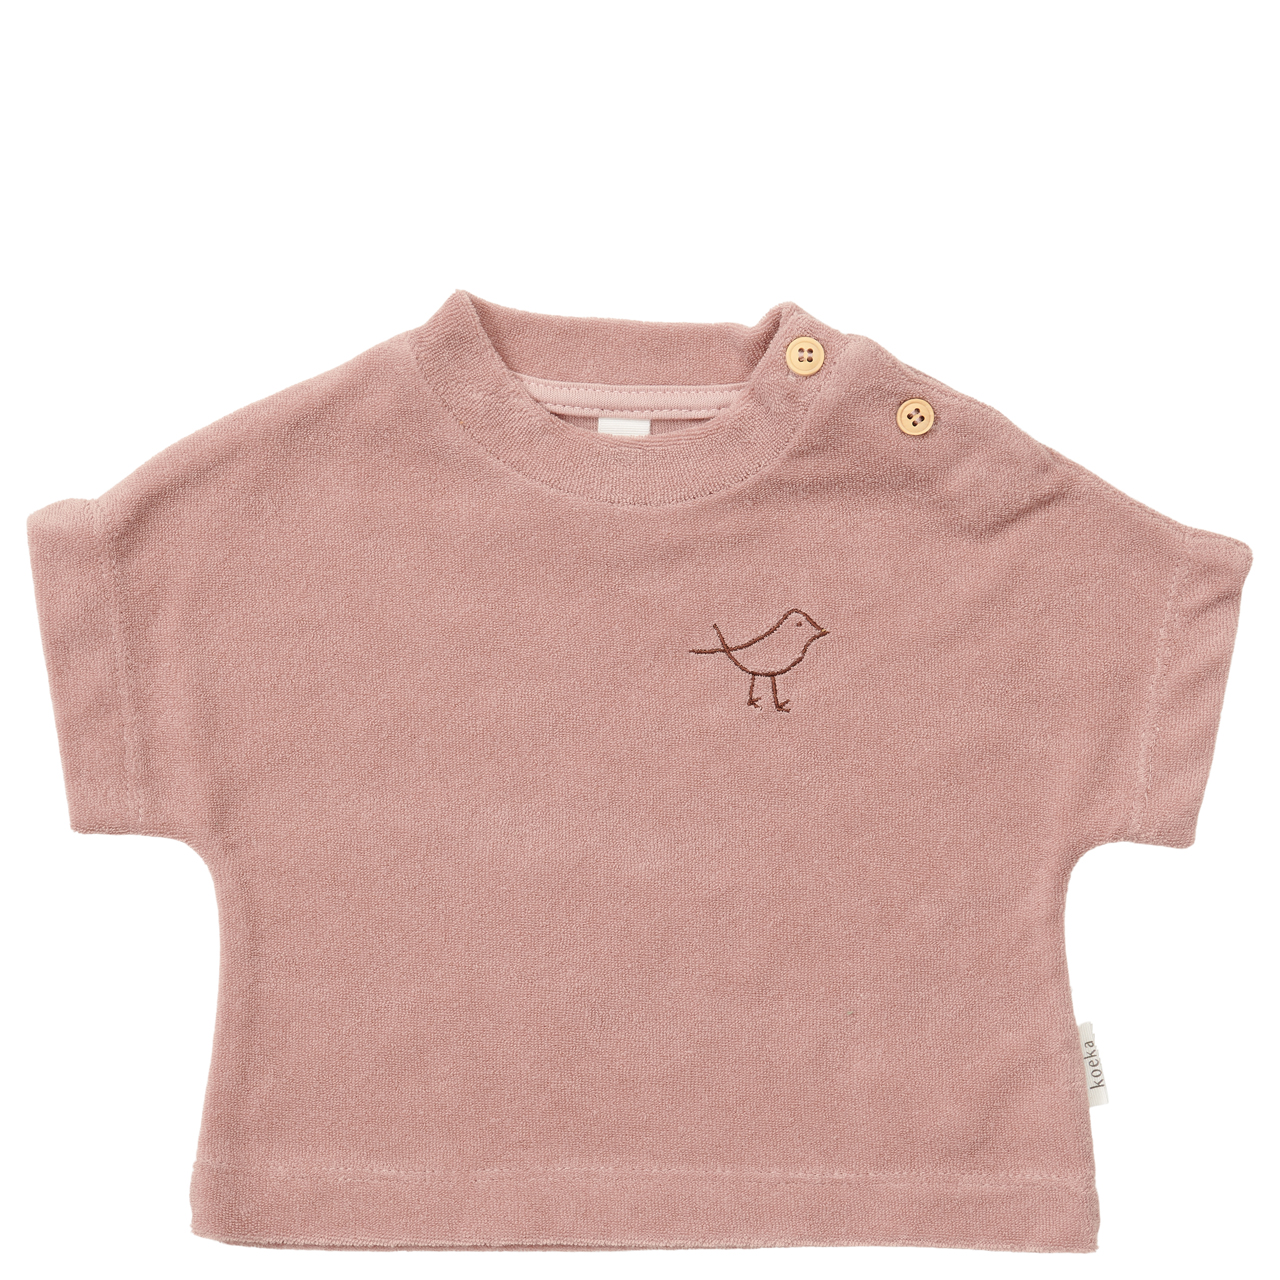 Baby t-shirt Royan old pink